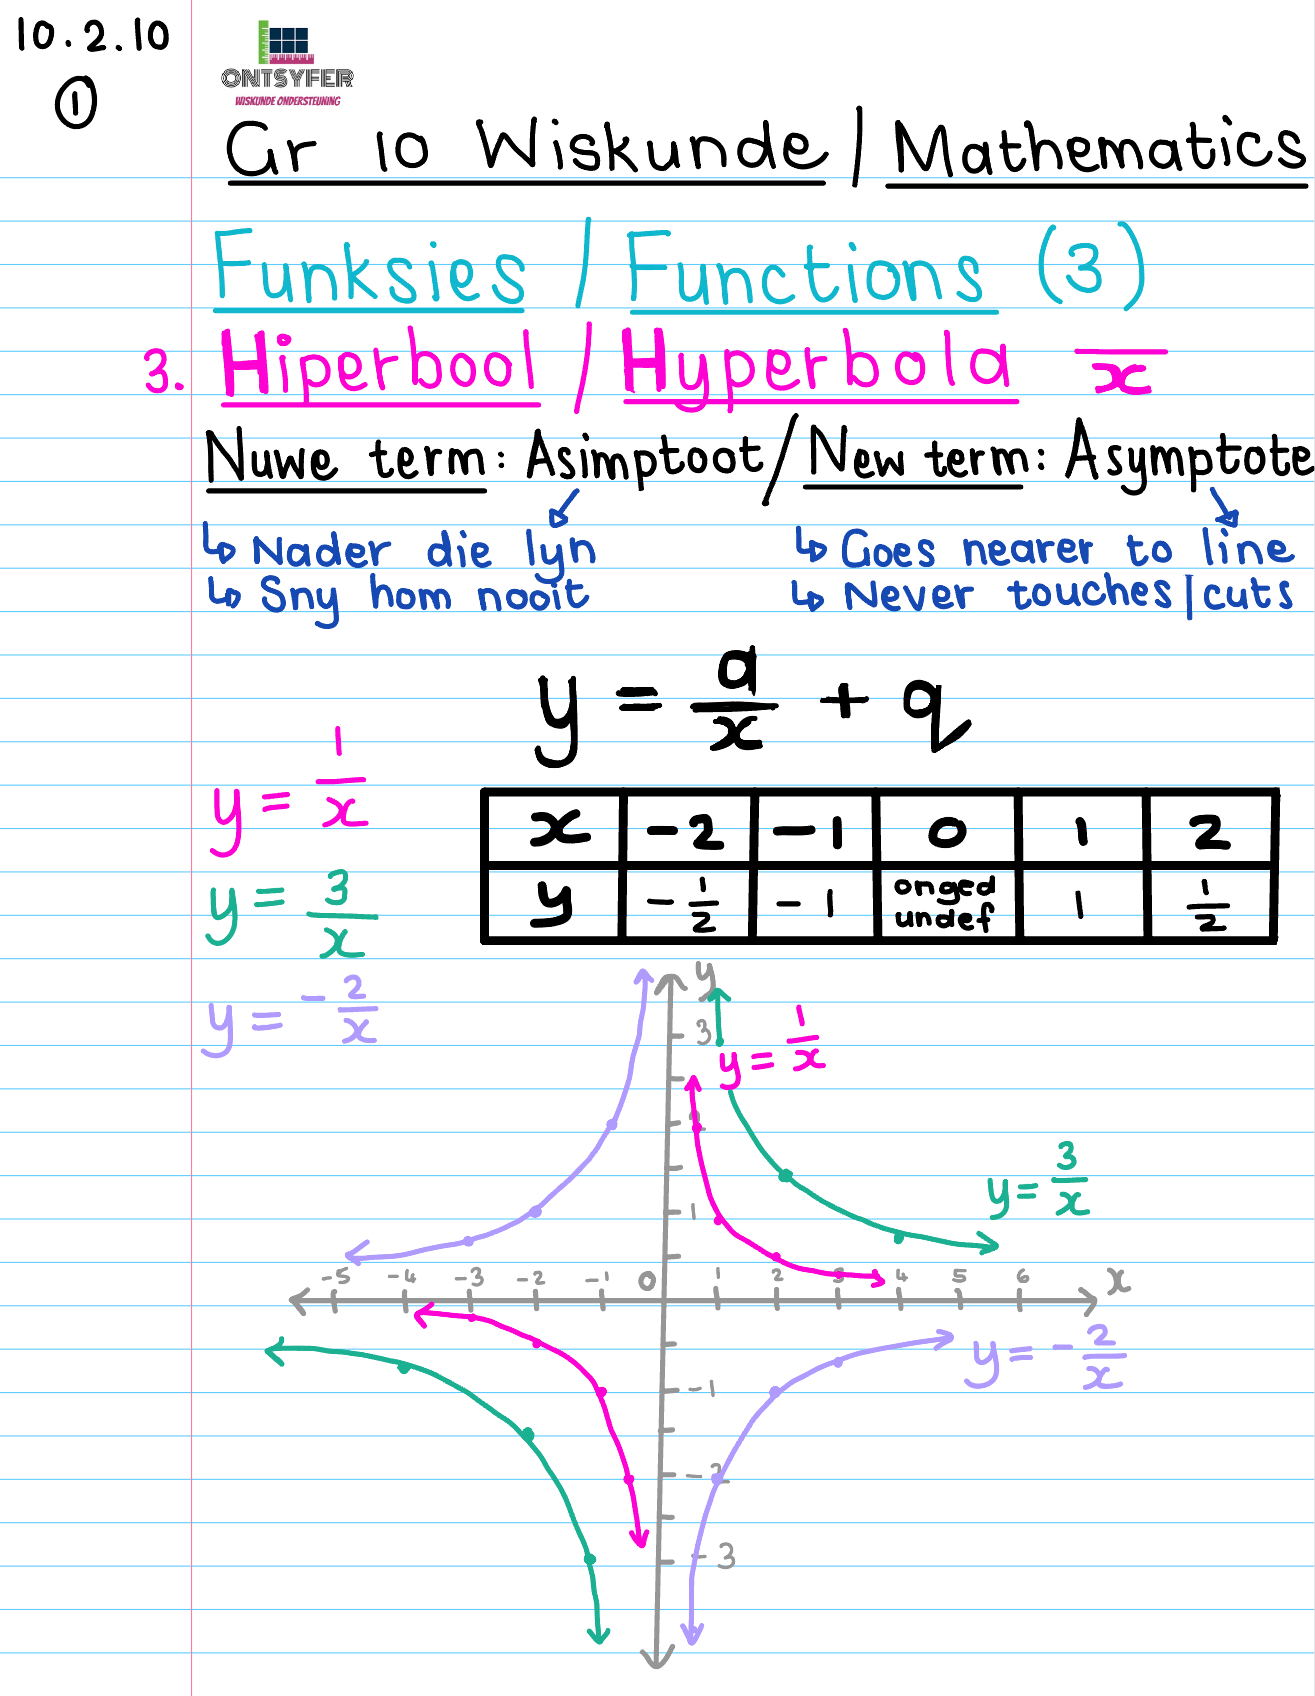 Gr 10 Funksies/Functions (3)